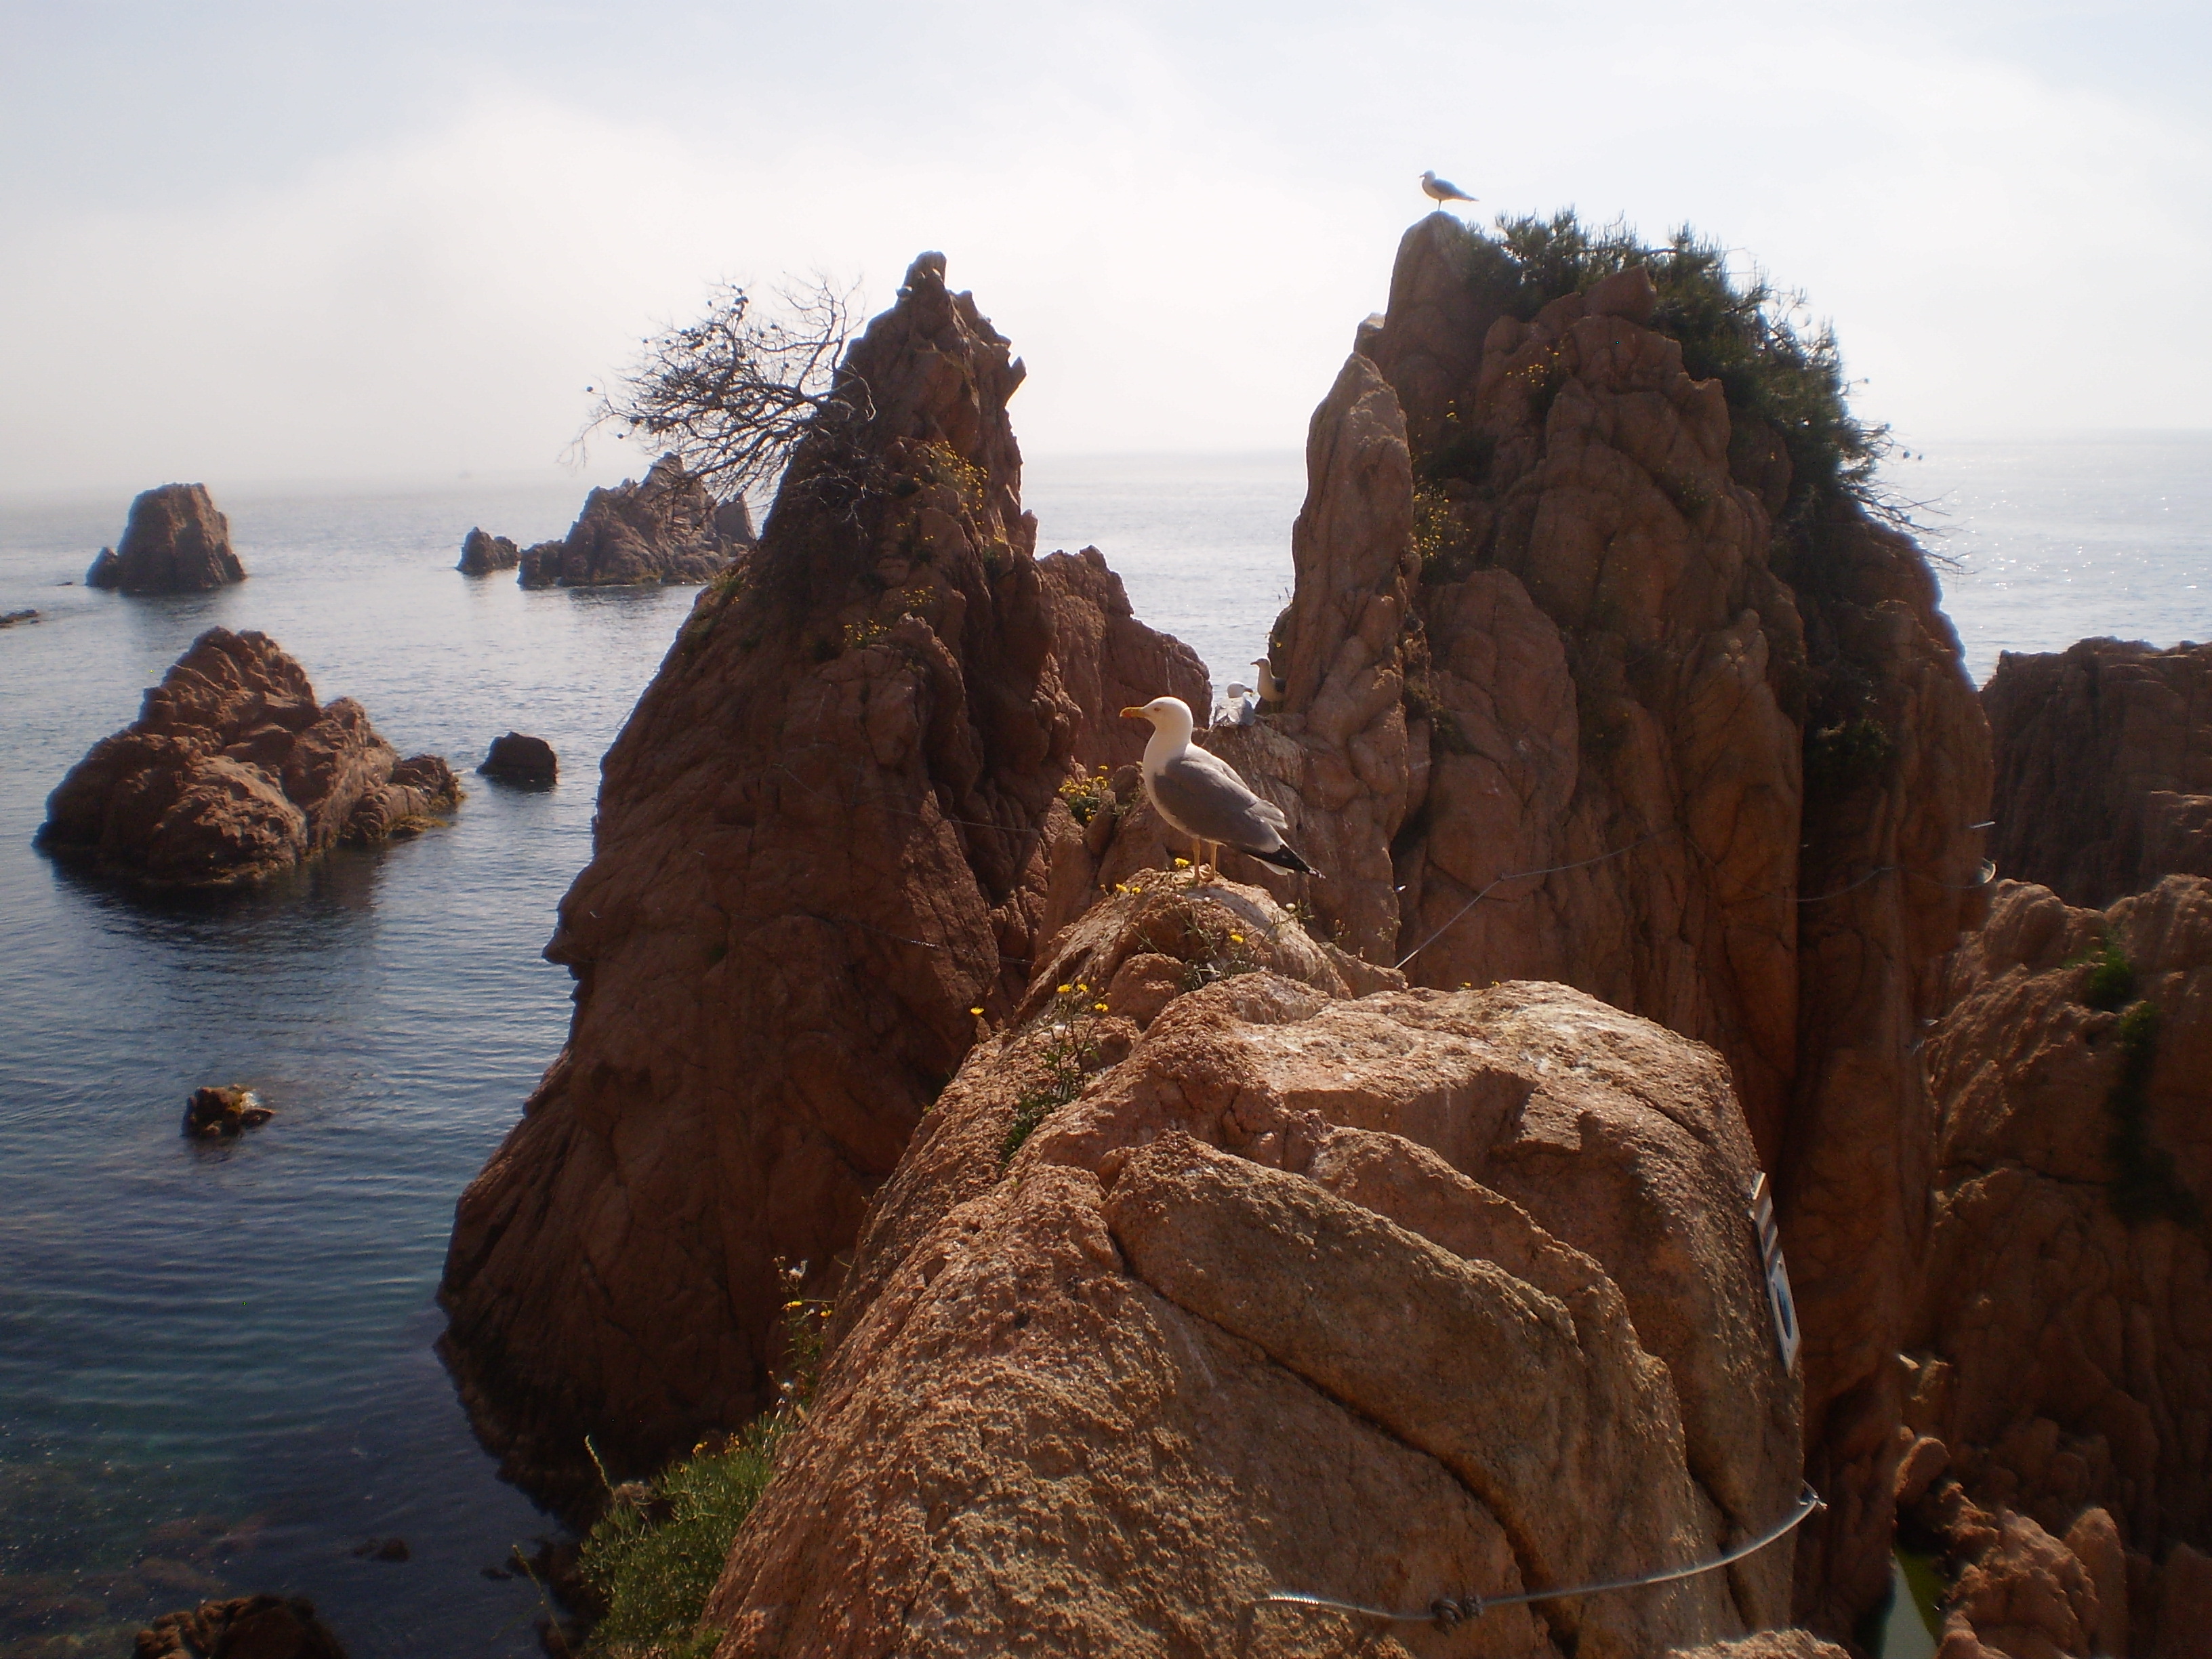 via ferrada. Tres grans roques per escalar al mig del mar i una gavina al mig de les roques